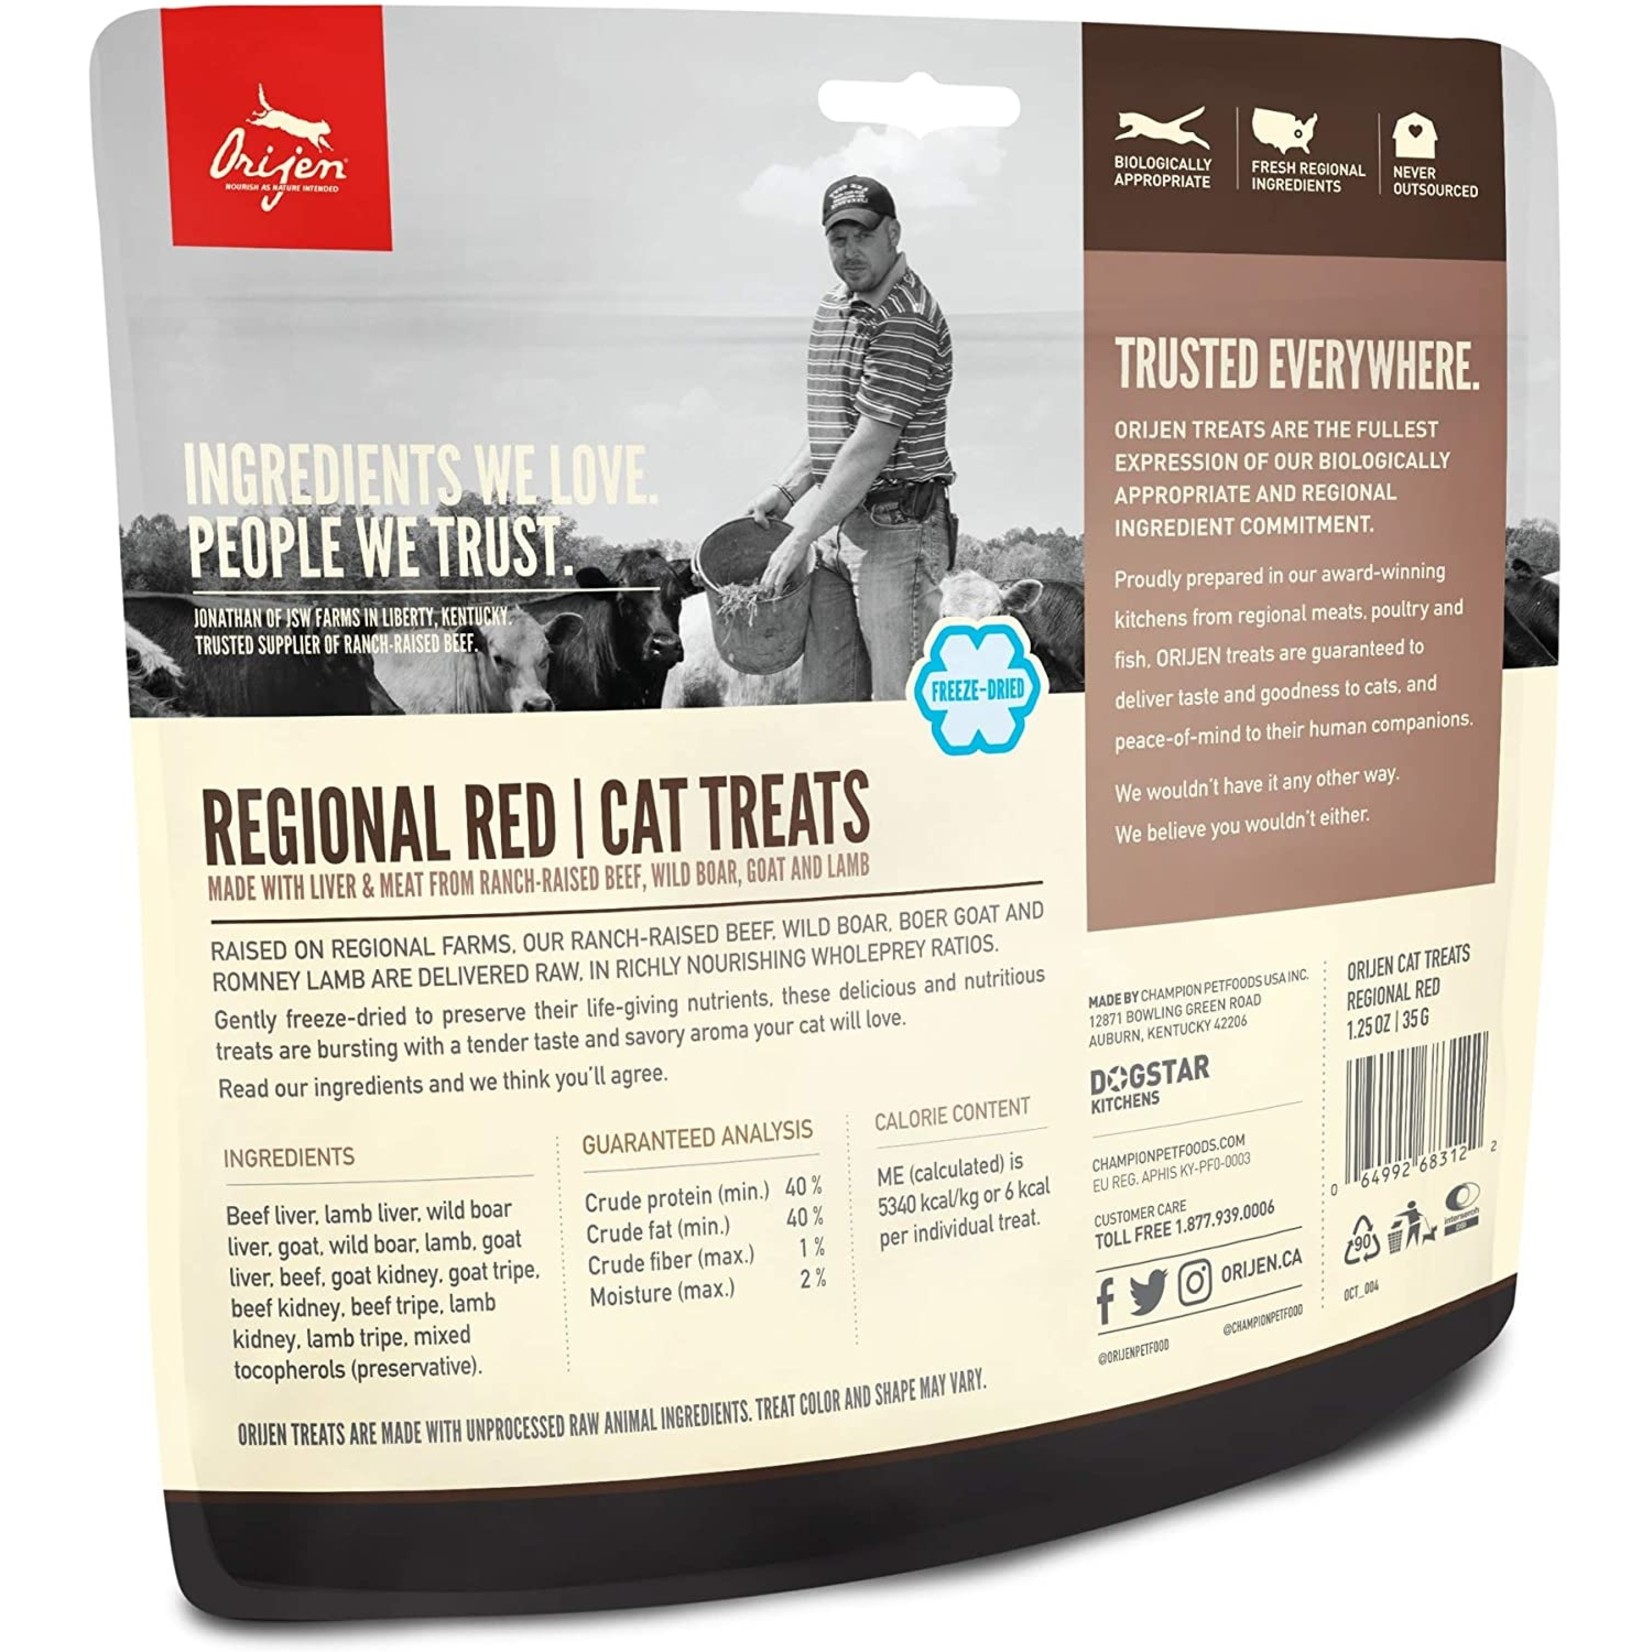 Orijen Orijen Regional Red Treats Freeze Dried Cat 1.25 oz